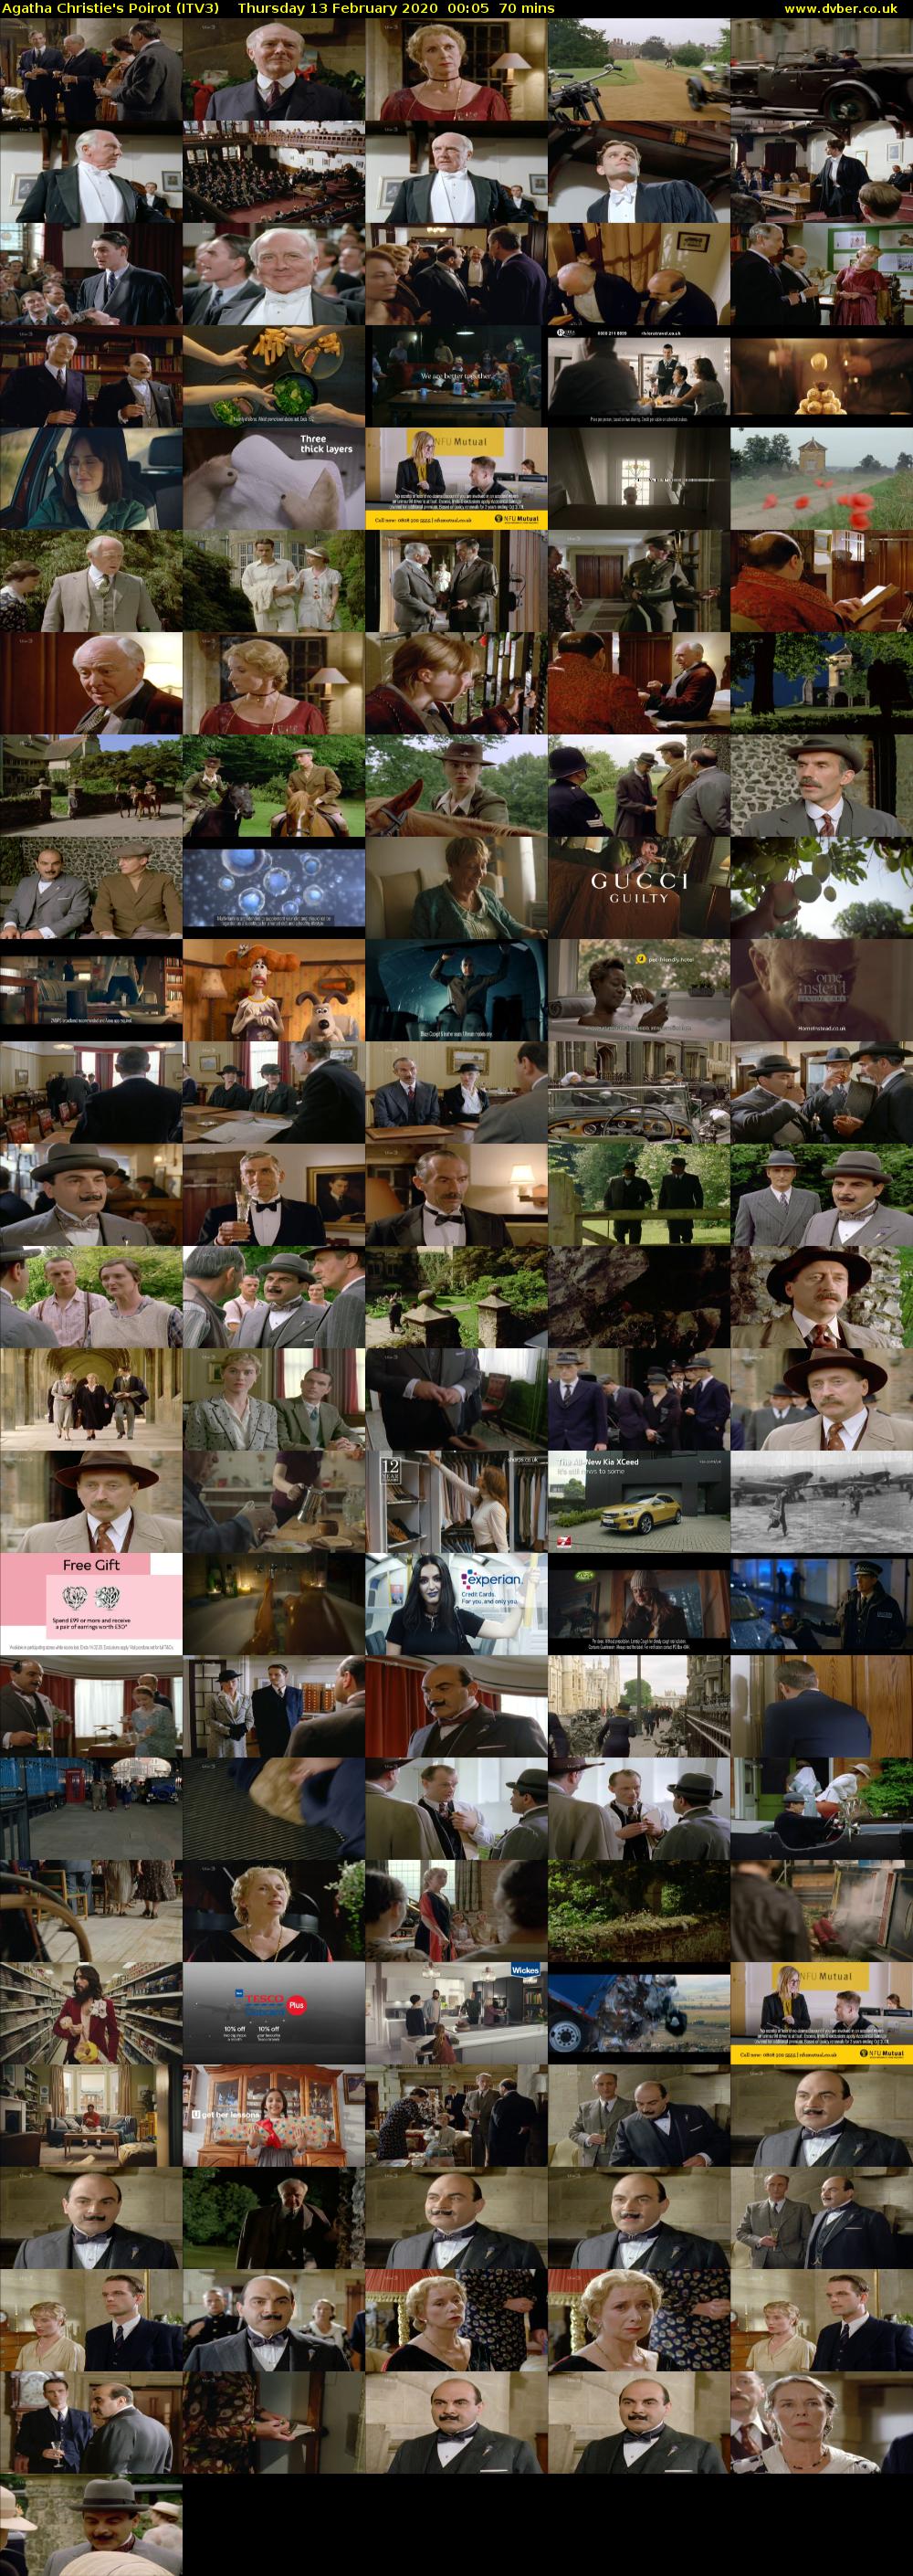 Agatha Christie's Poirot (ITV3) Thursday 13 February 2020 00:05 - 01:15